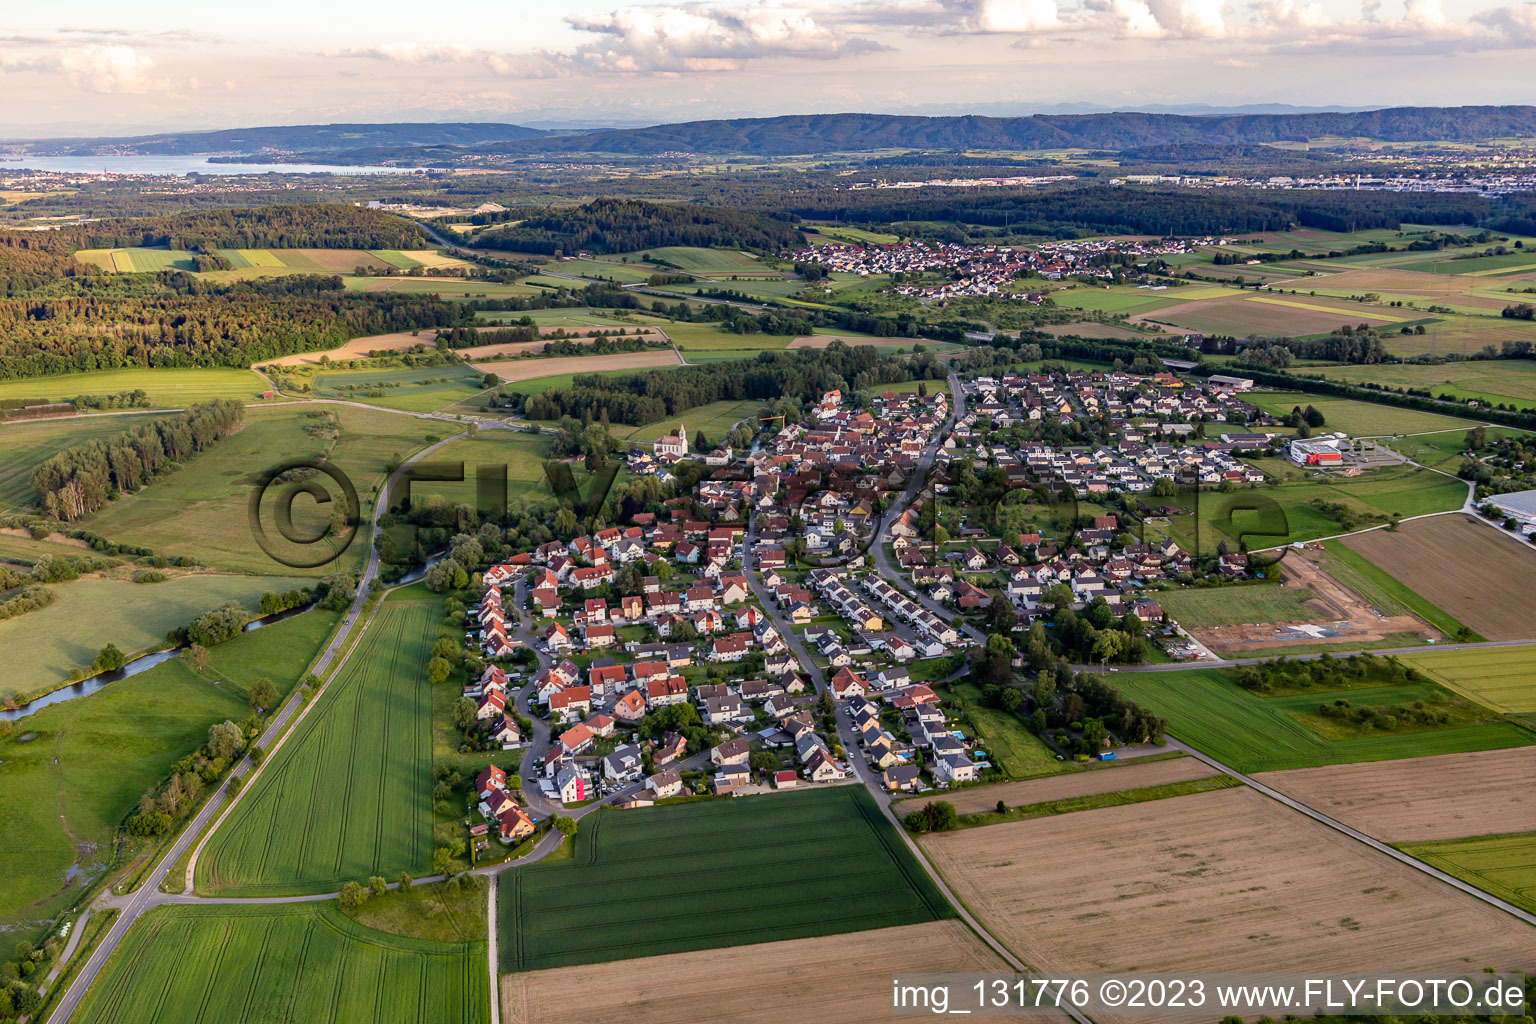 Luftbild von Ortsteil Beuren an der Aach in Singen im Bundesland Baden-Württemberg, Deutschland